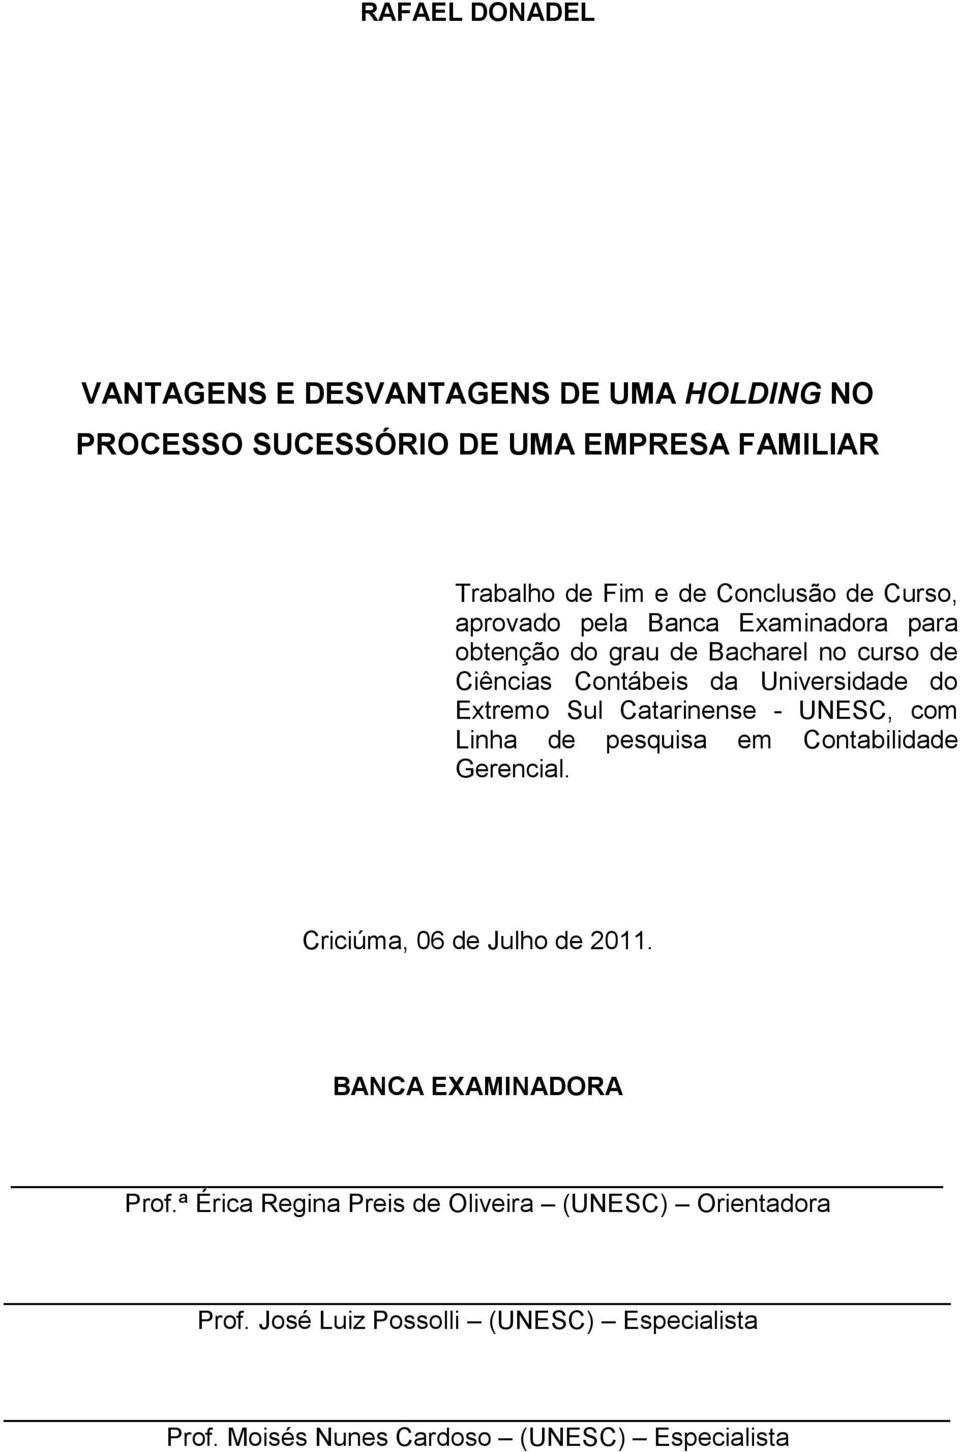 Catarinense - UNESC, com Linha de pesquisa em Contabilidade Gerencial. Criciúma, 06 de Julho de 2011. BANCA EXAMINADORA Prof.